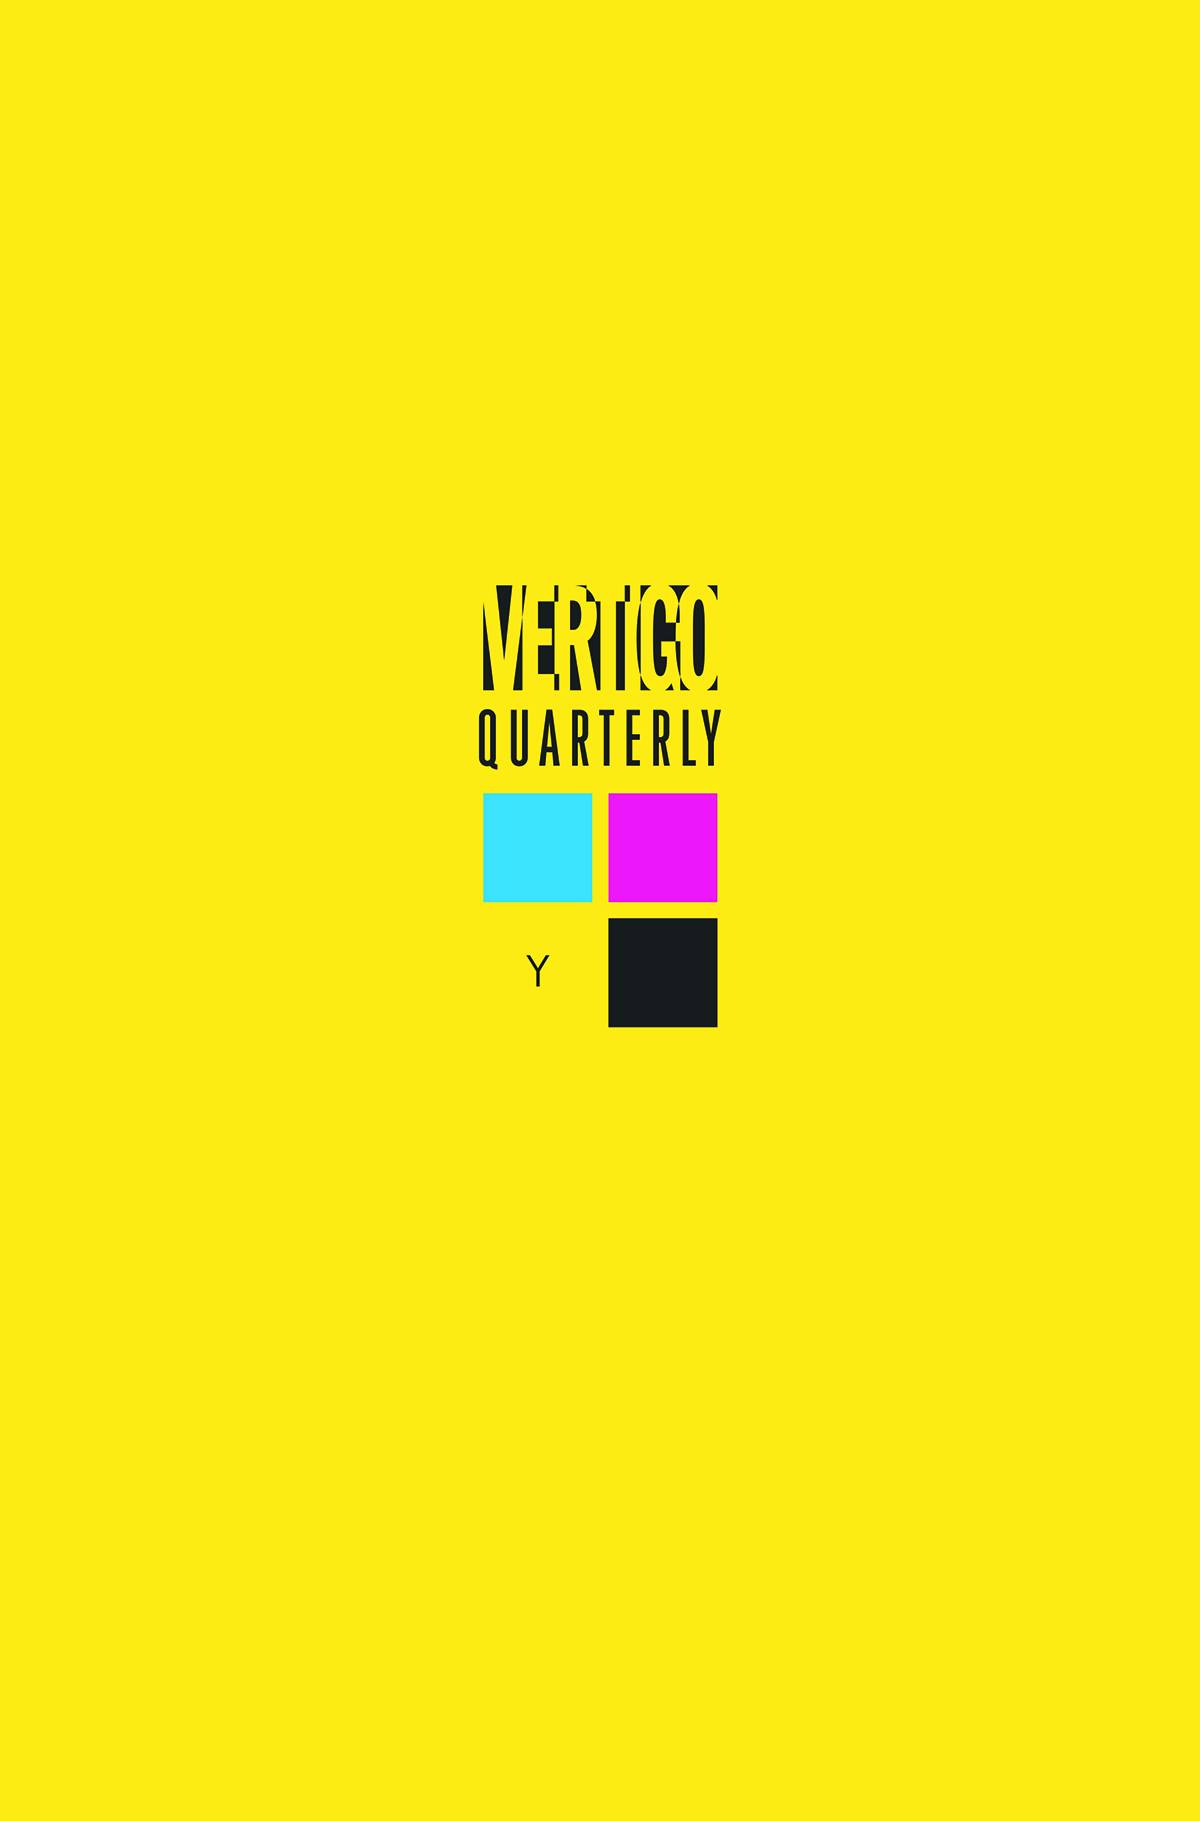 Vertigo Quarterly #1.20 Yellow